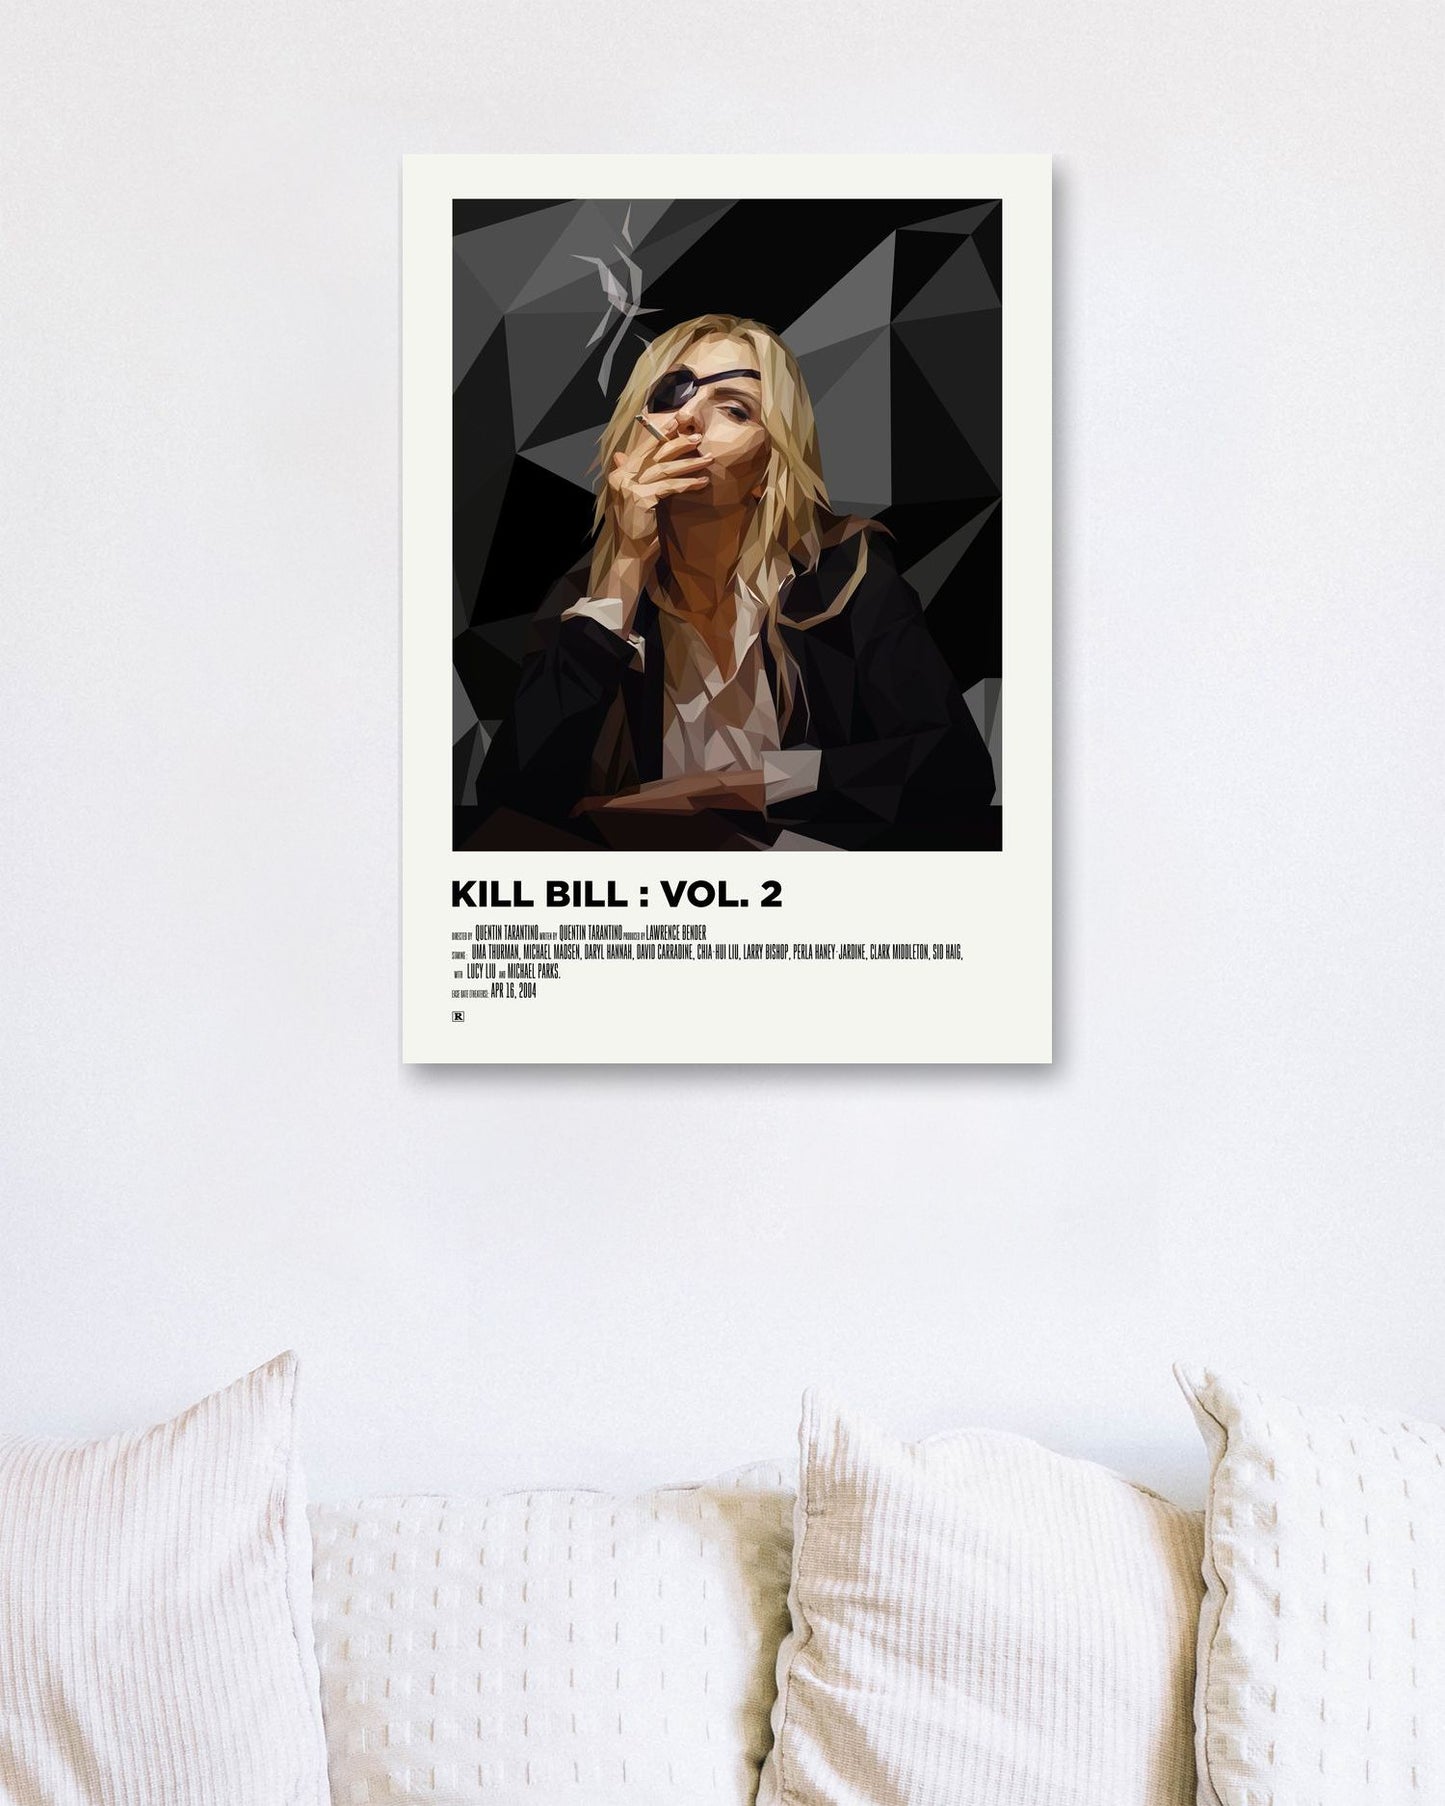 kill bill vol. 2 - @Artnesia